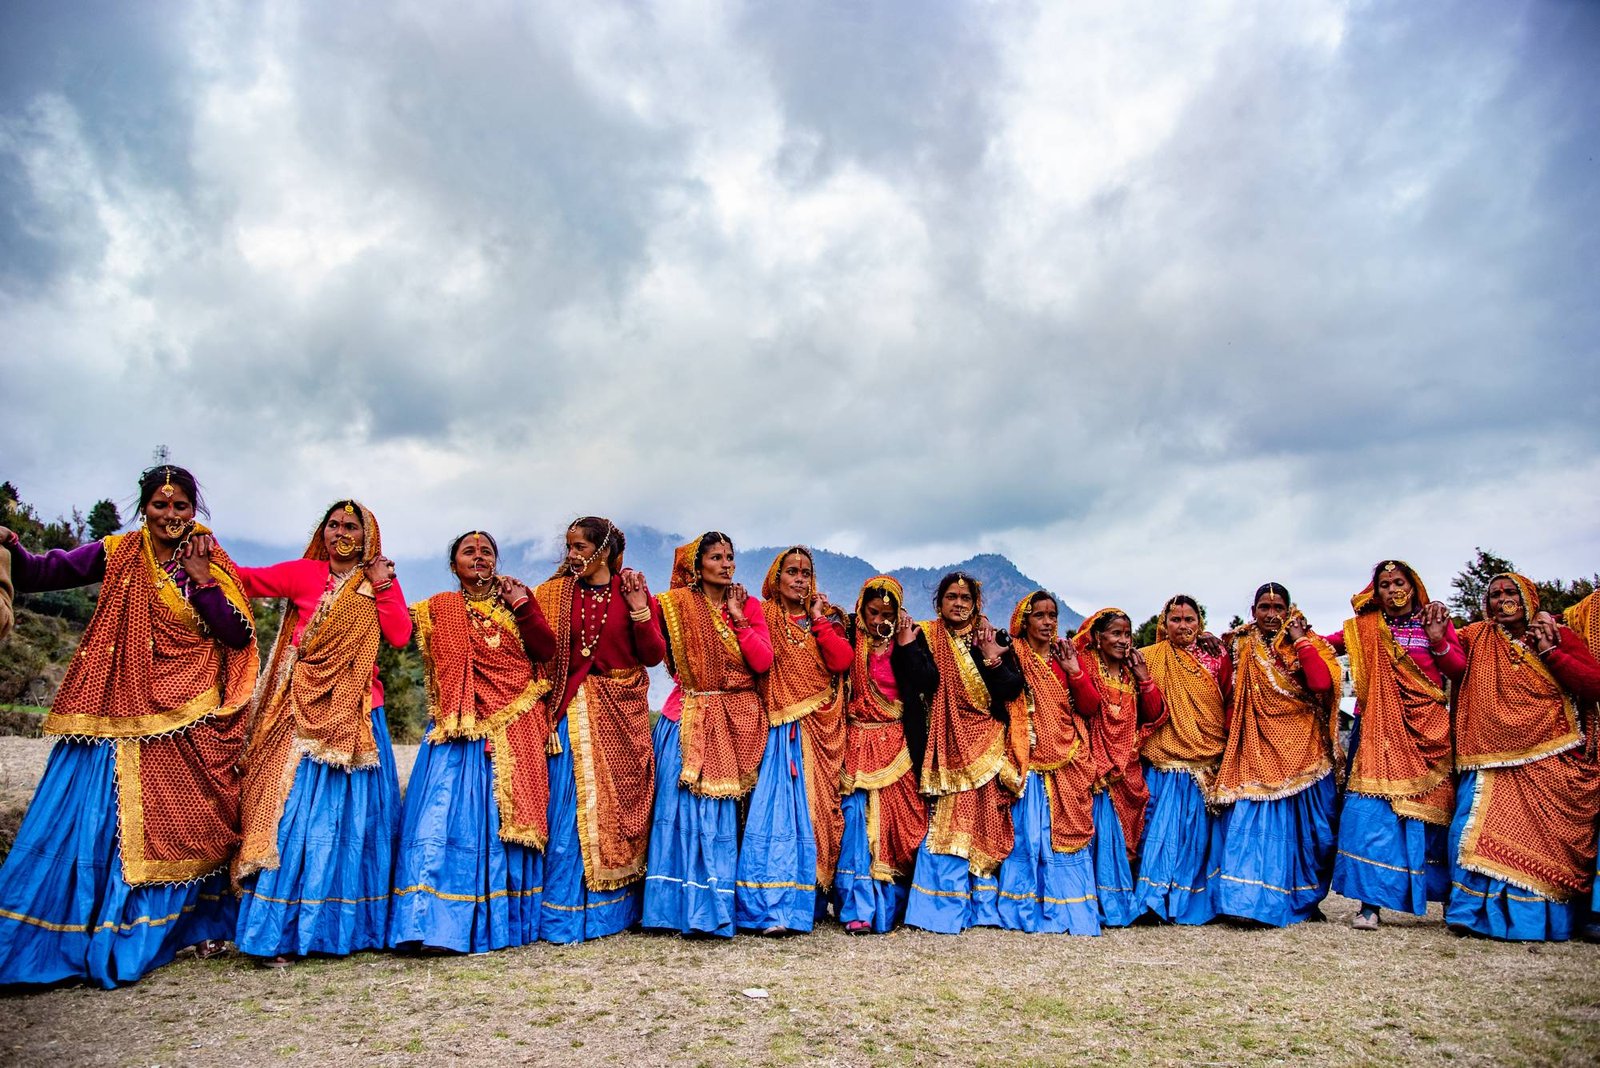 Kumaoni women dancing Chanchari dance